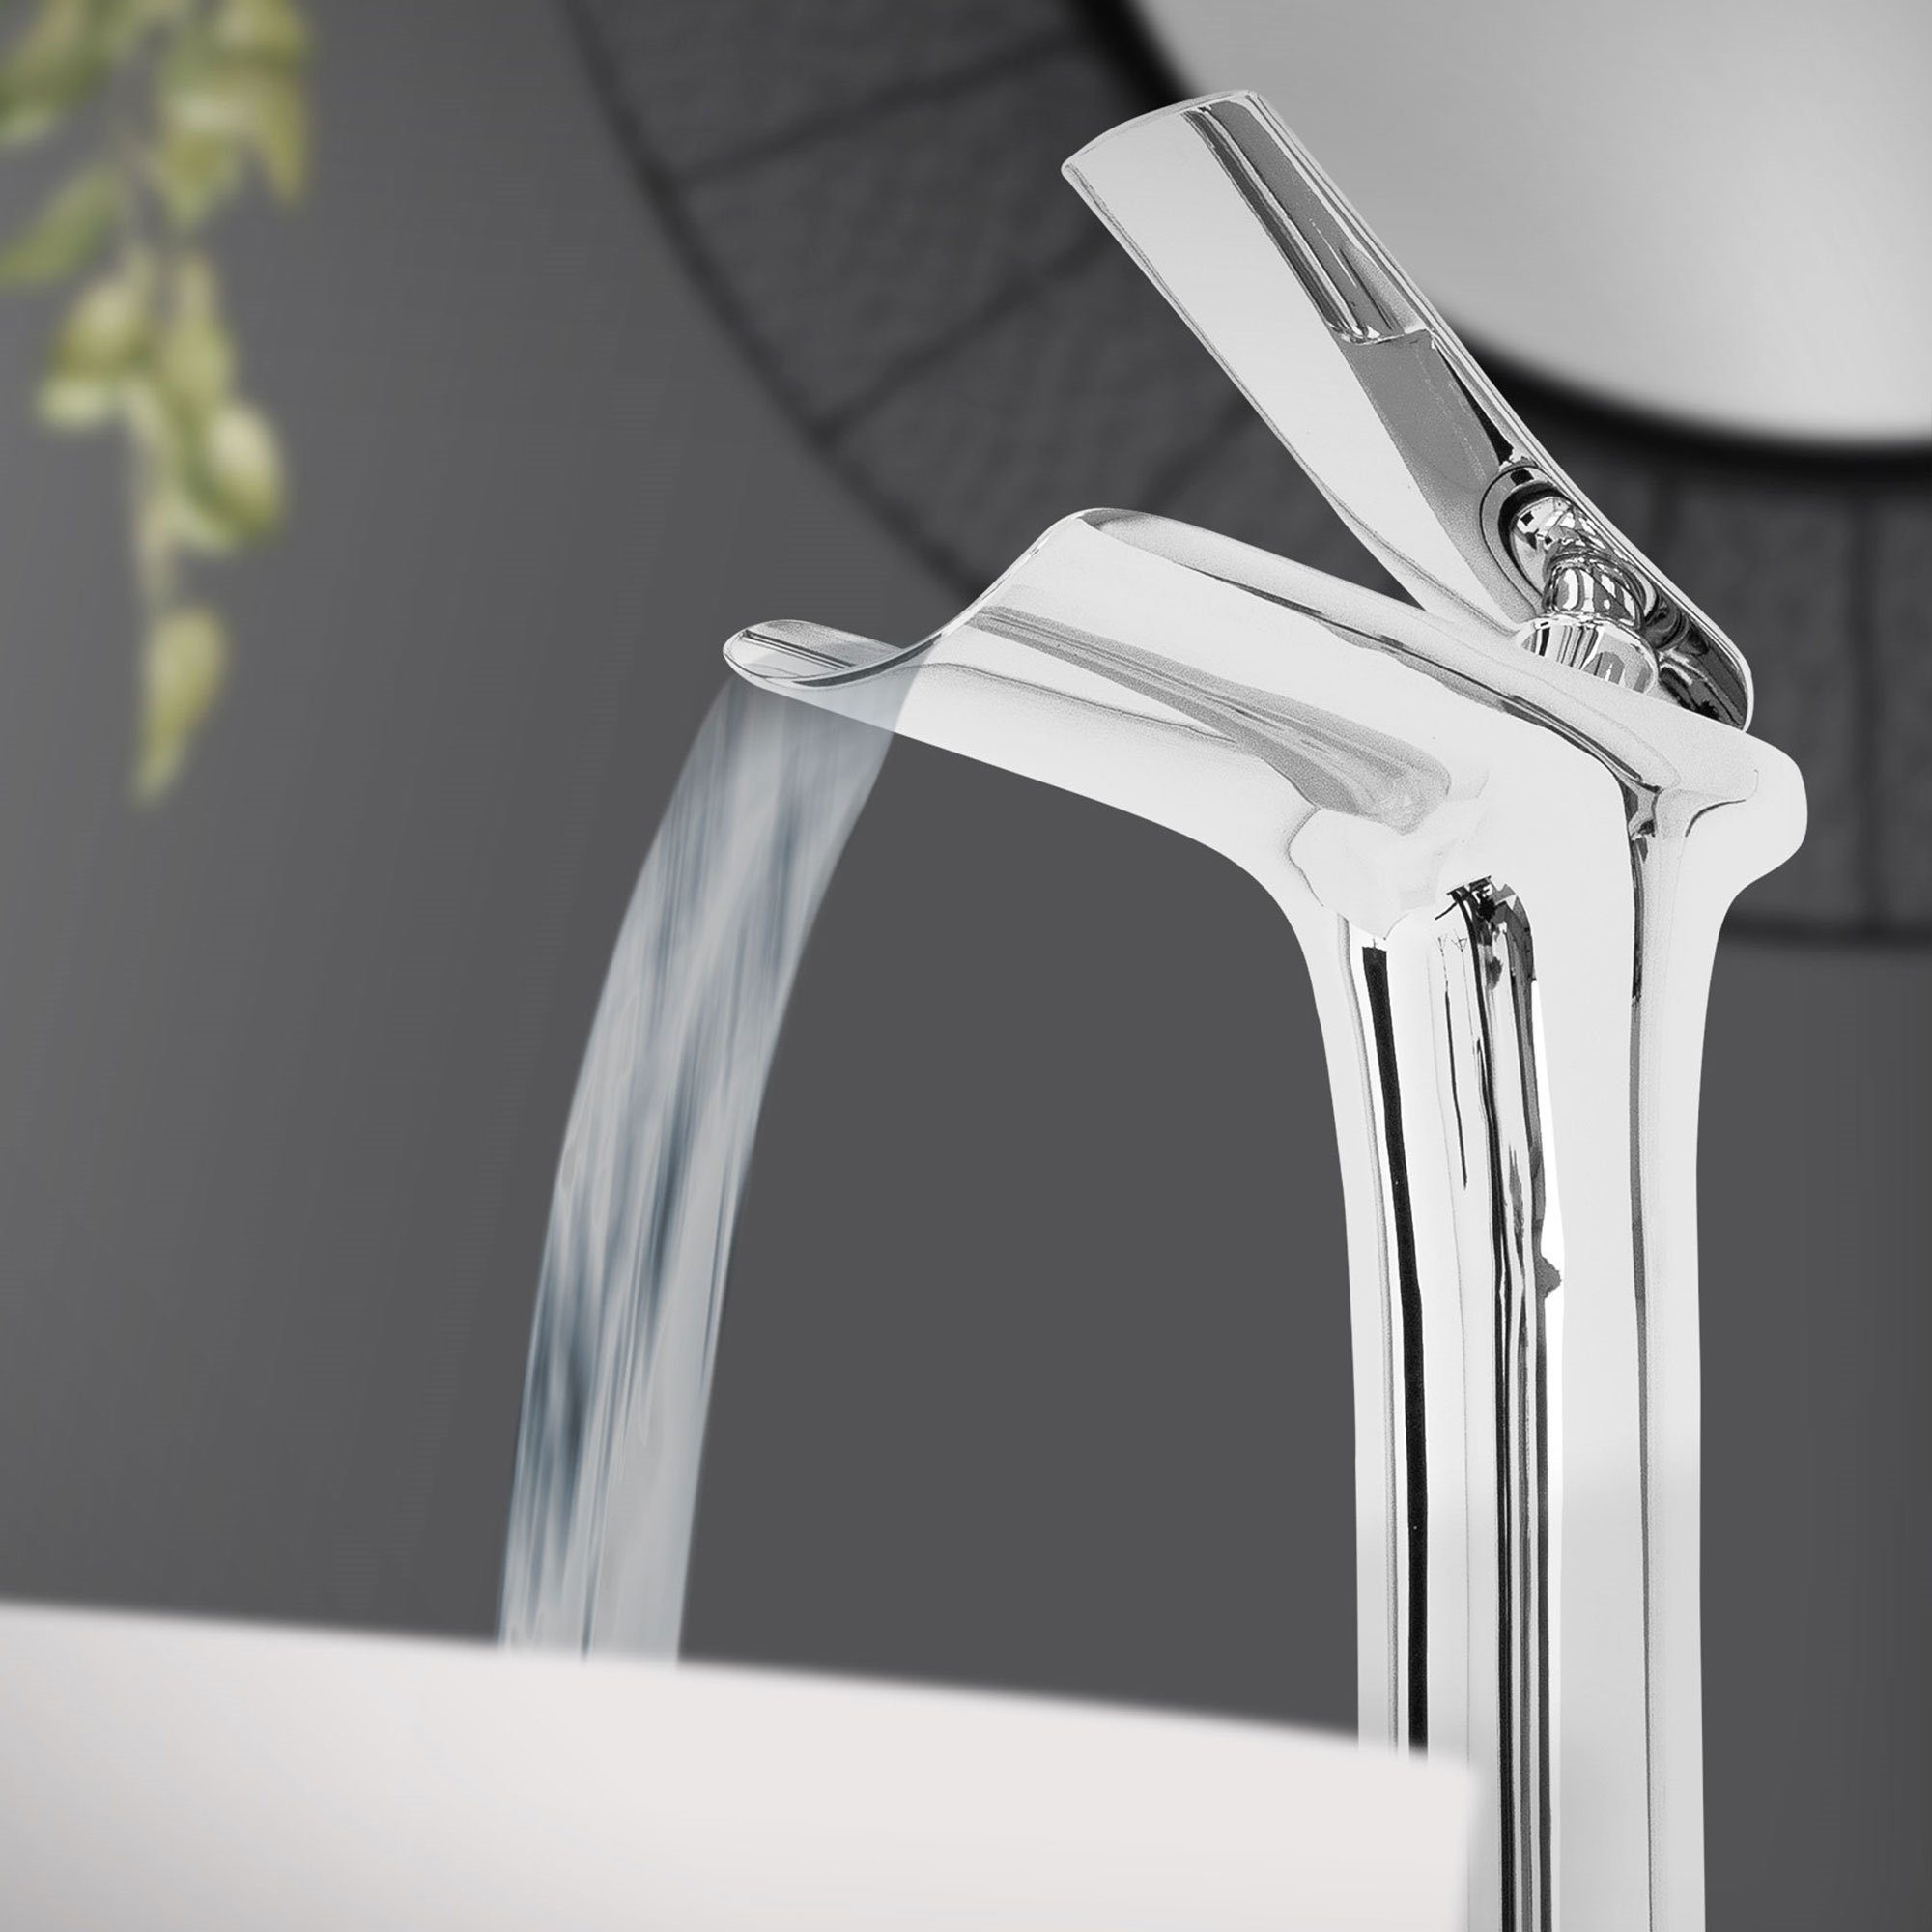 LuxeBath Waschtischarmatur Wasserhahn Mischbatterie Einhebelmischer Armaturen Chrom Messing Wasserfall Design